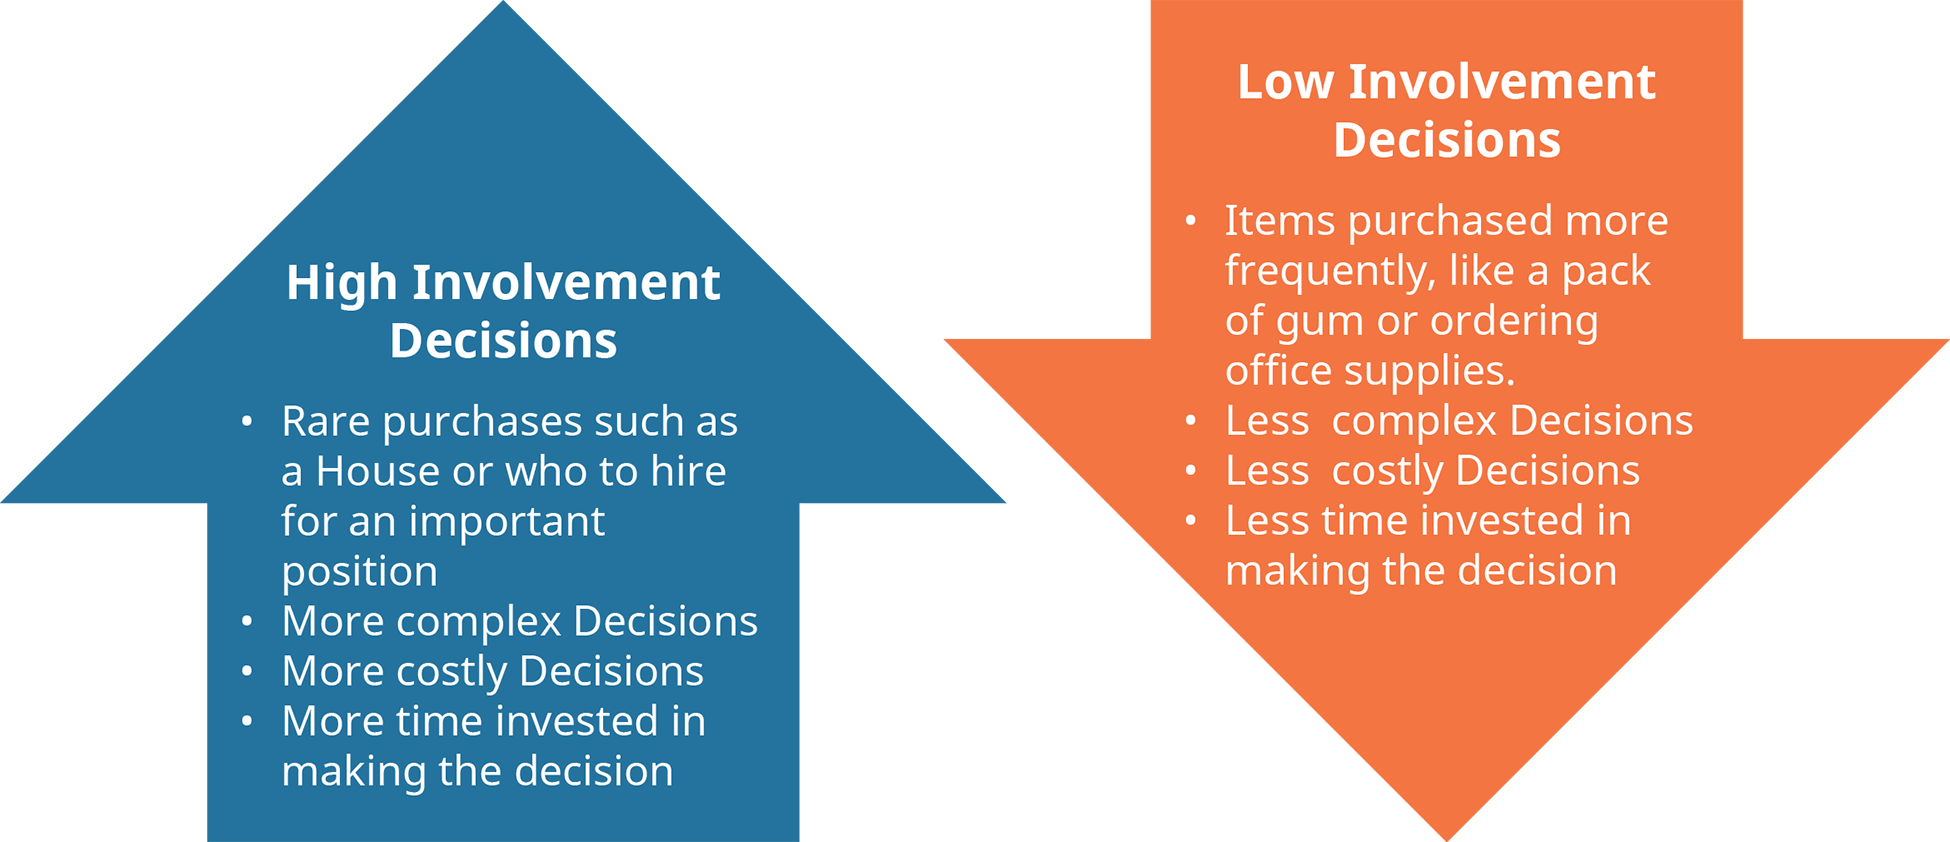 图表说明了高参与度和低参与度决策的不同特征。